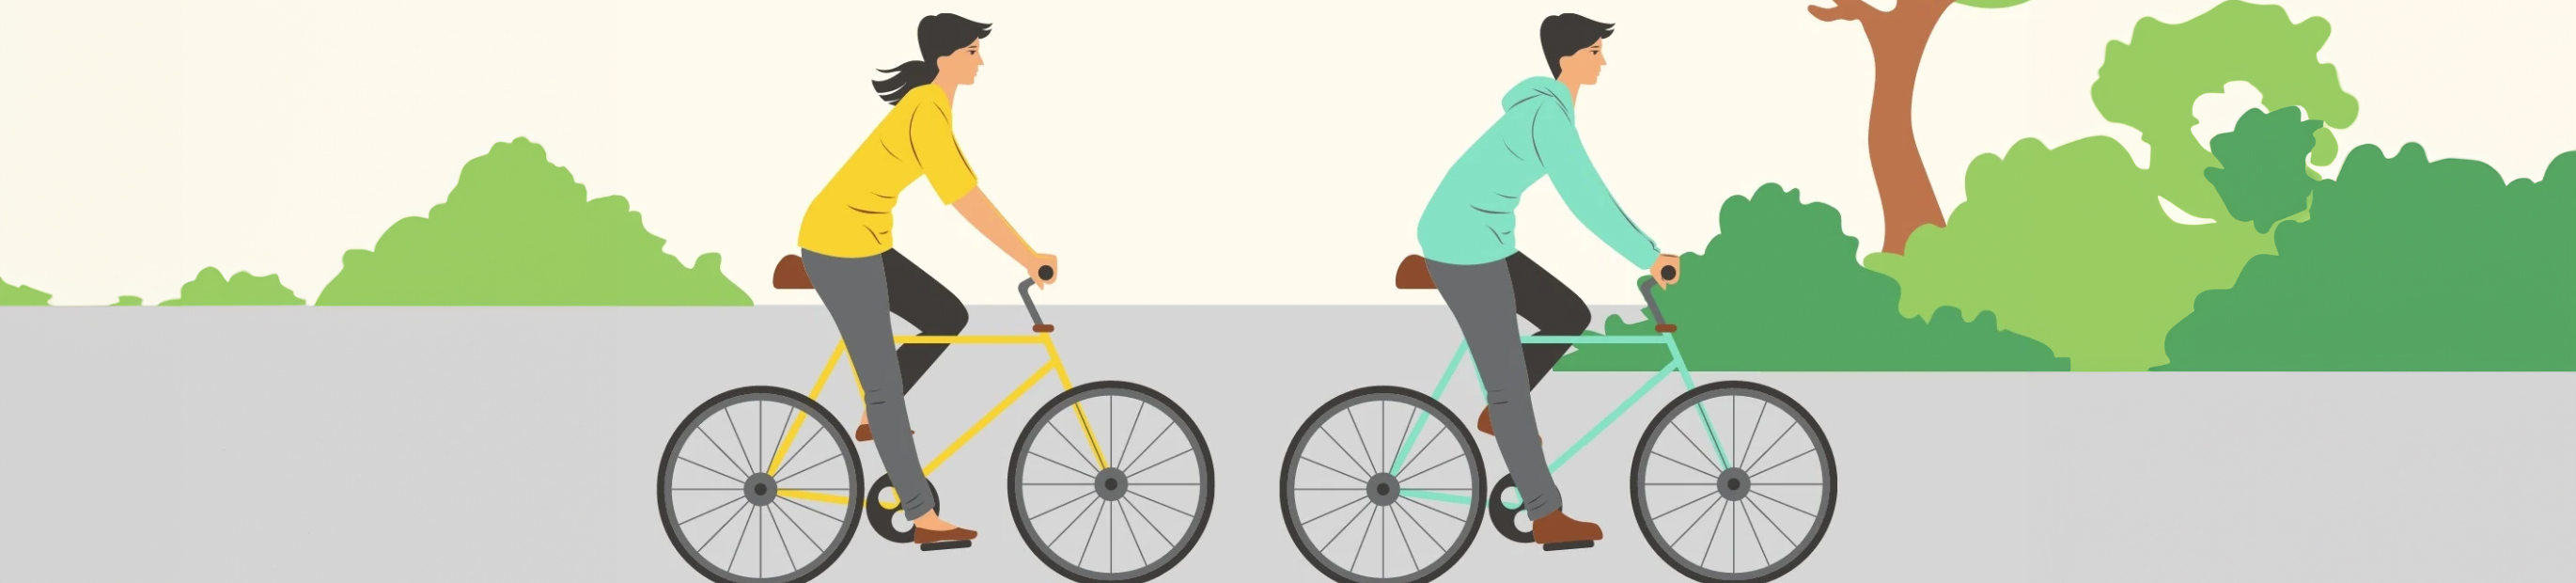 Illustration-Bild mit zwei Fahrradfahrern